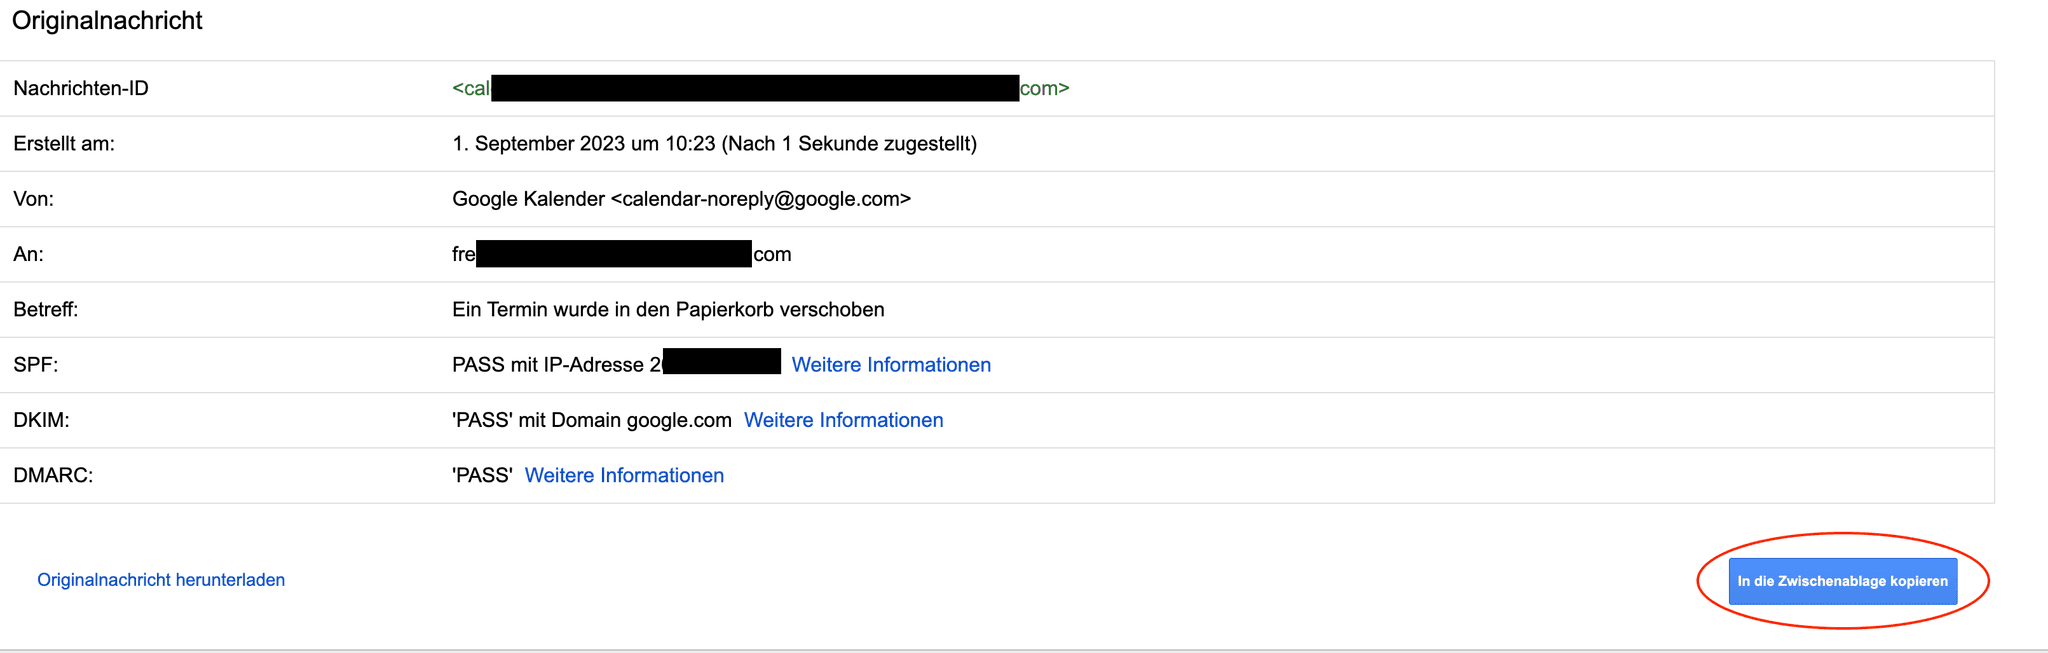 Gmail Phishing Angriff Erkennen: Originaltext der E-Mail in die Zwischenablage kopieren